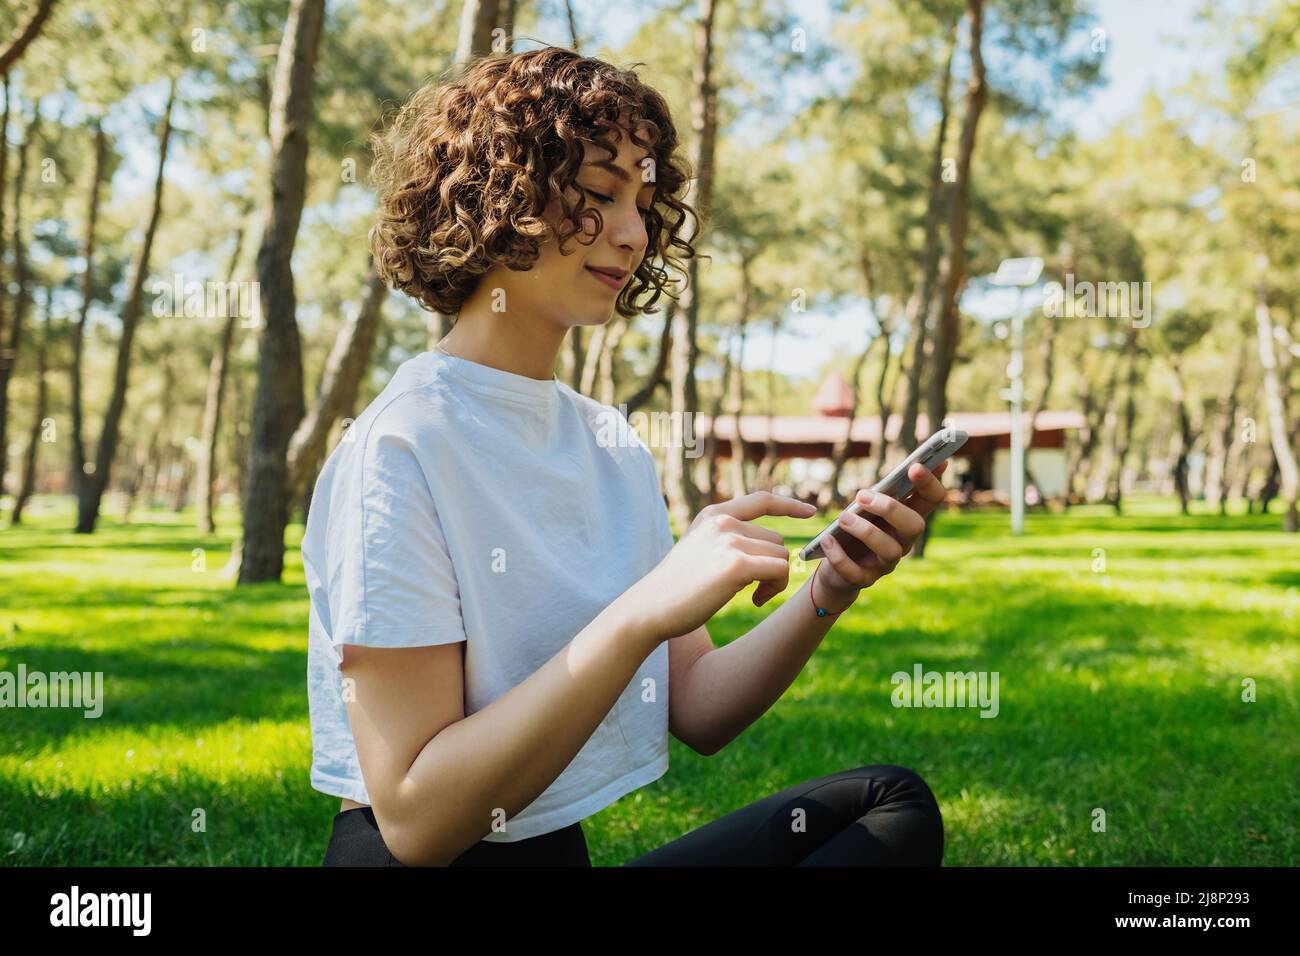 Halblange Körpergröße Foto rothaarige Frau trägt weißes T-Shirt auf Gras sitzen lächelnd glücklich mit Smartphone Surfen im Internet oder Messaging mit Freund Stockfoto